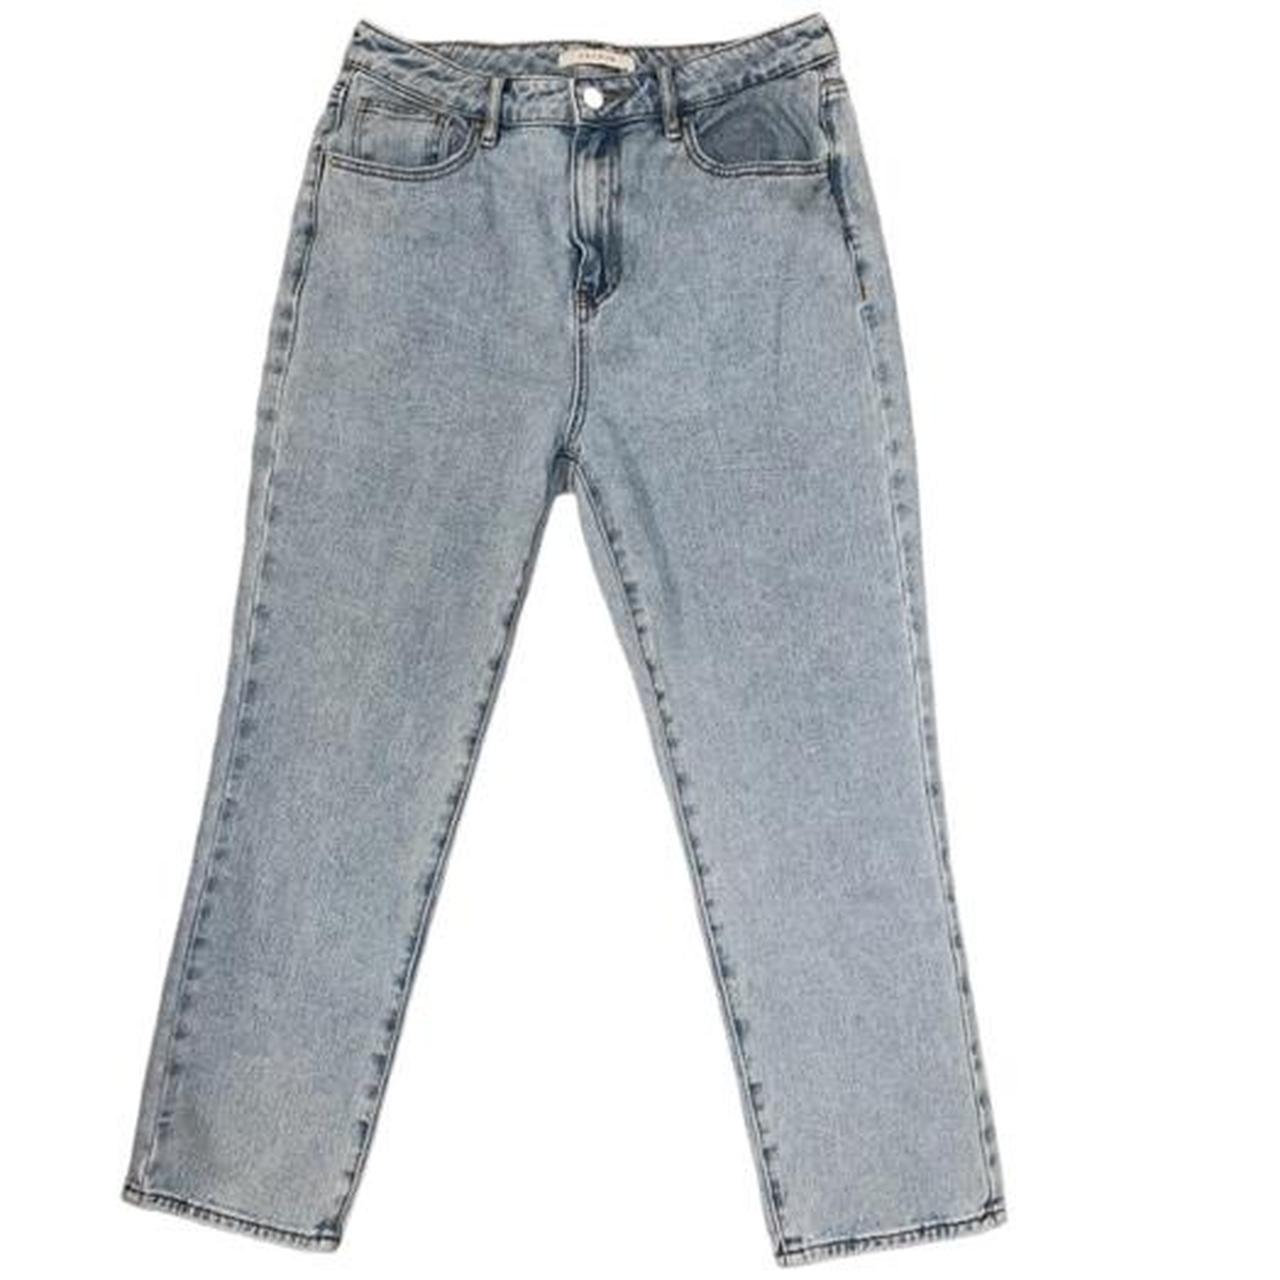 Pacsun 90’s mom jeans! Measurements: Size 8... - Depop